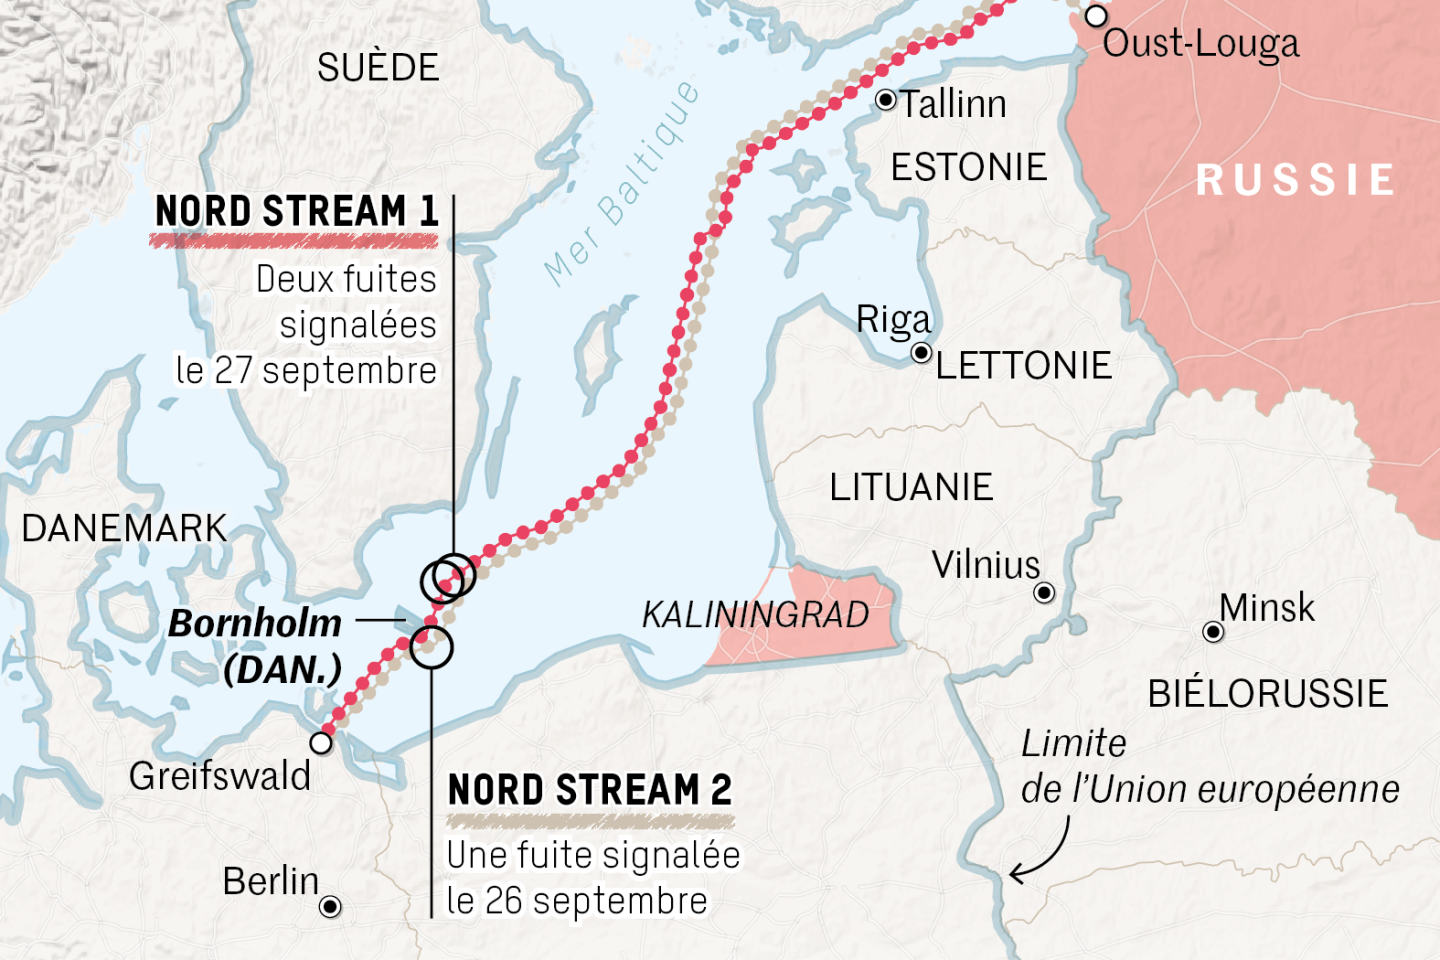 Sabotage présumé de Nord Stream : Suède et Finlande soupçonnent une intervention étrangère, la Russie se défend